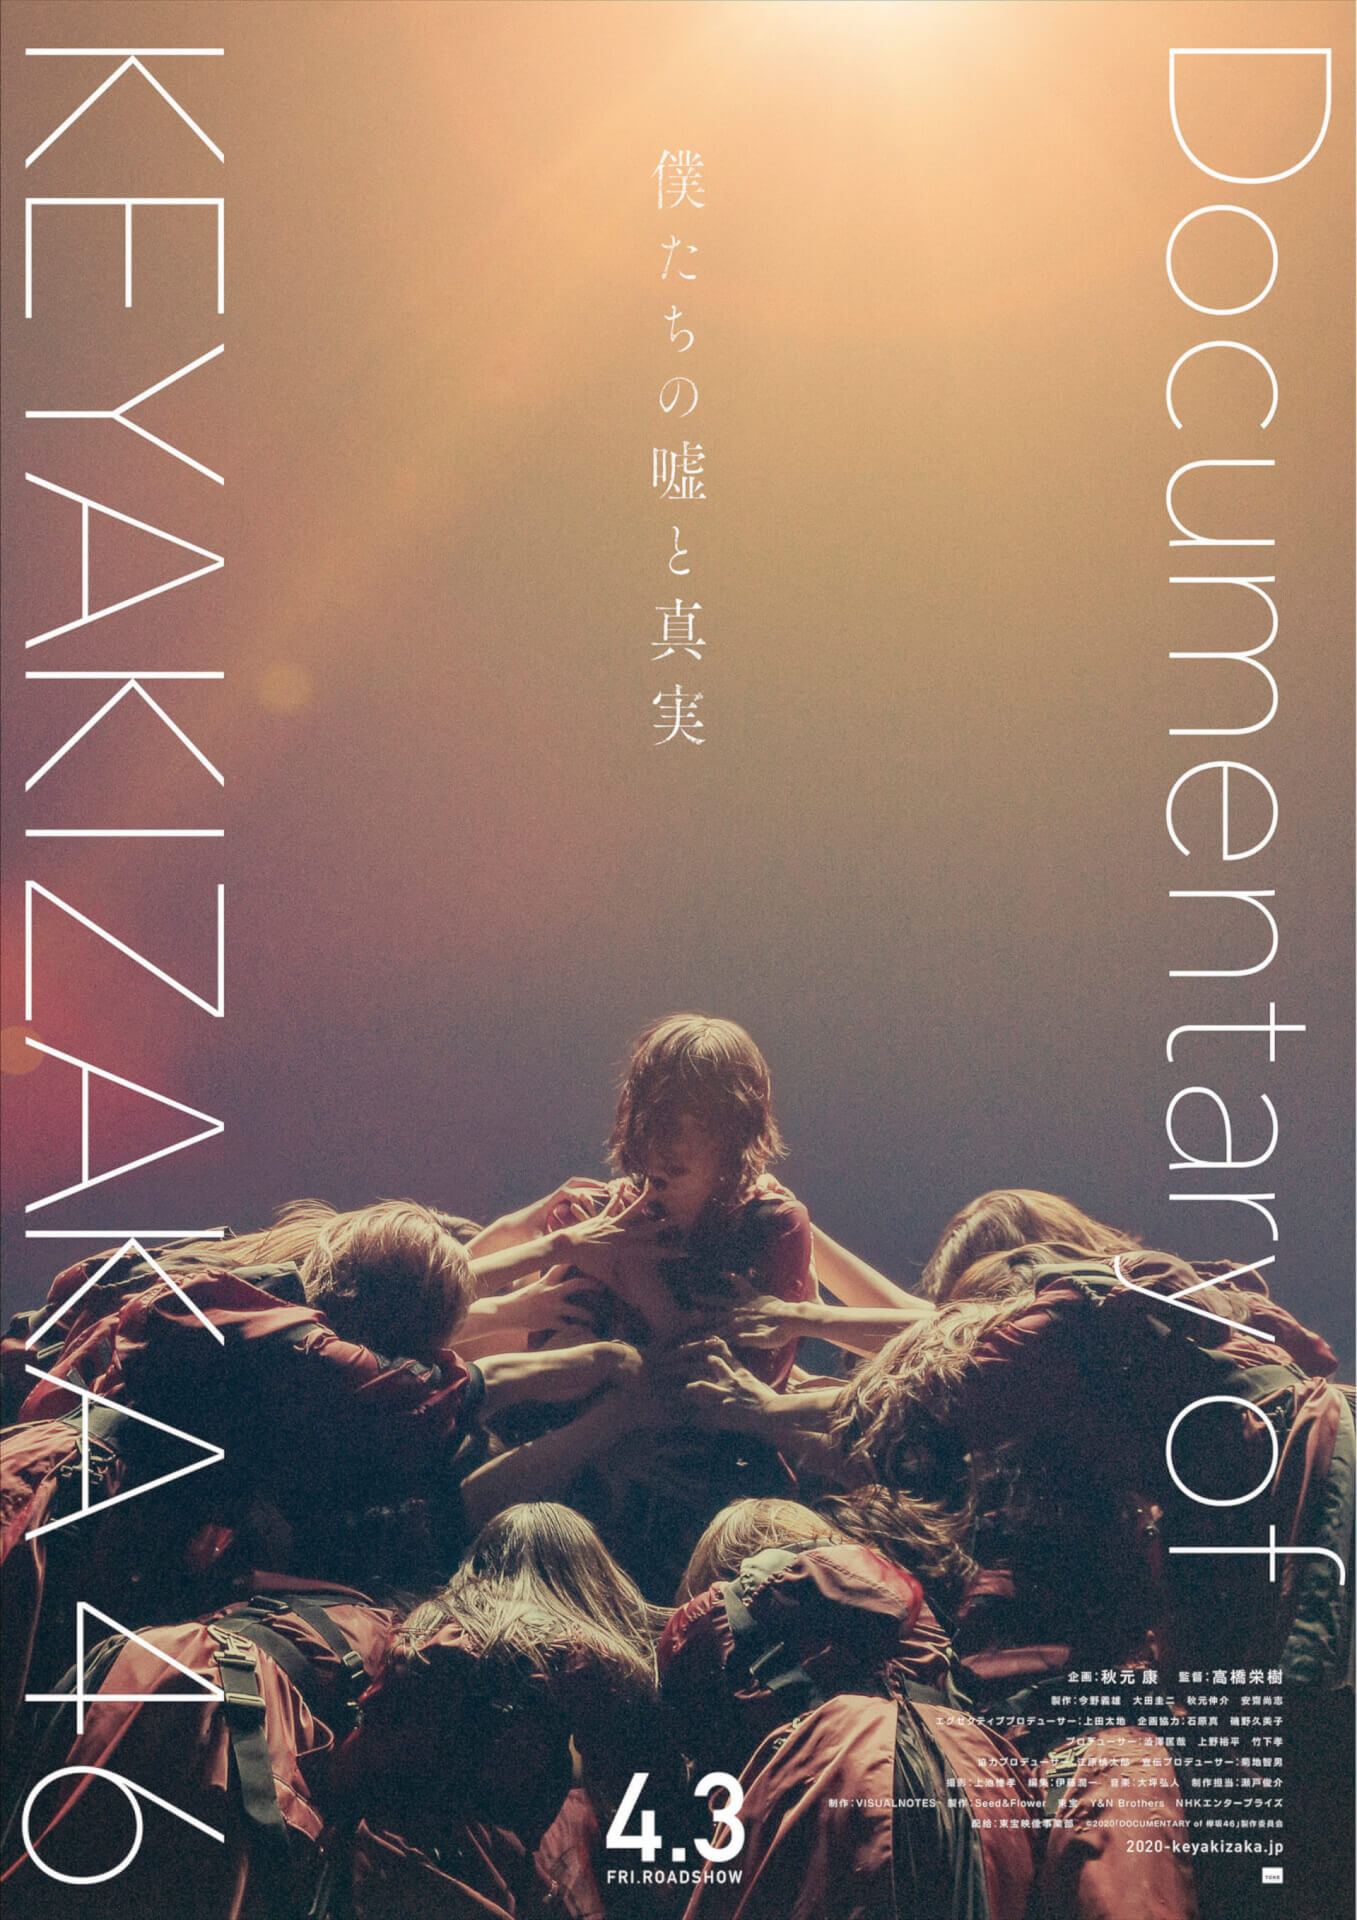 ドキュメンタリームービー『僕たちの嘘と真実 DOCUMENTARY of 欅坂46』の公開が新型コロナウイルス感染症の影響により延期に film200312_keyakizaka_1